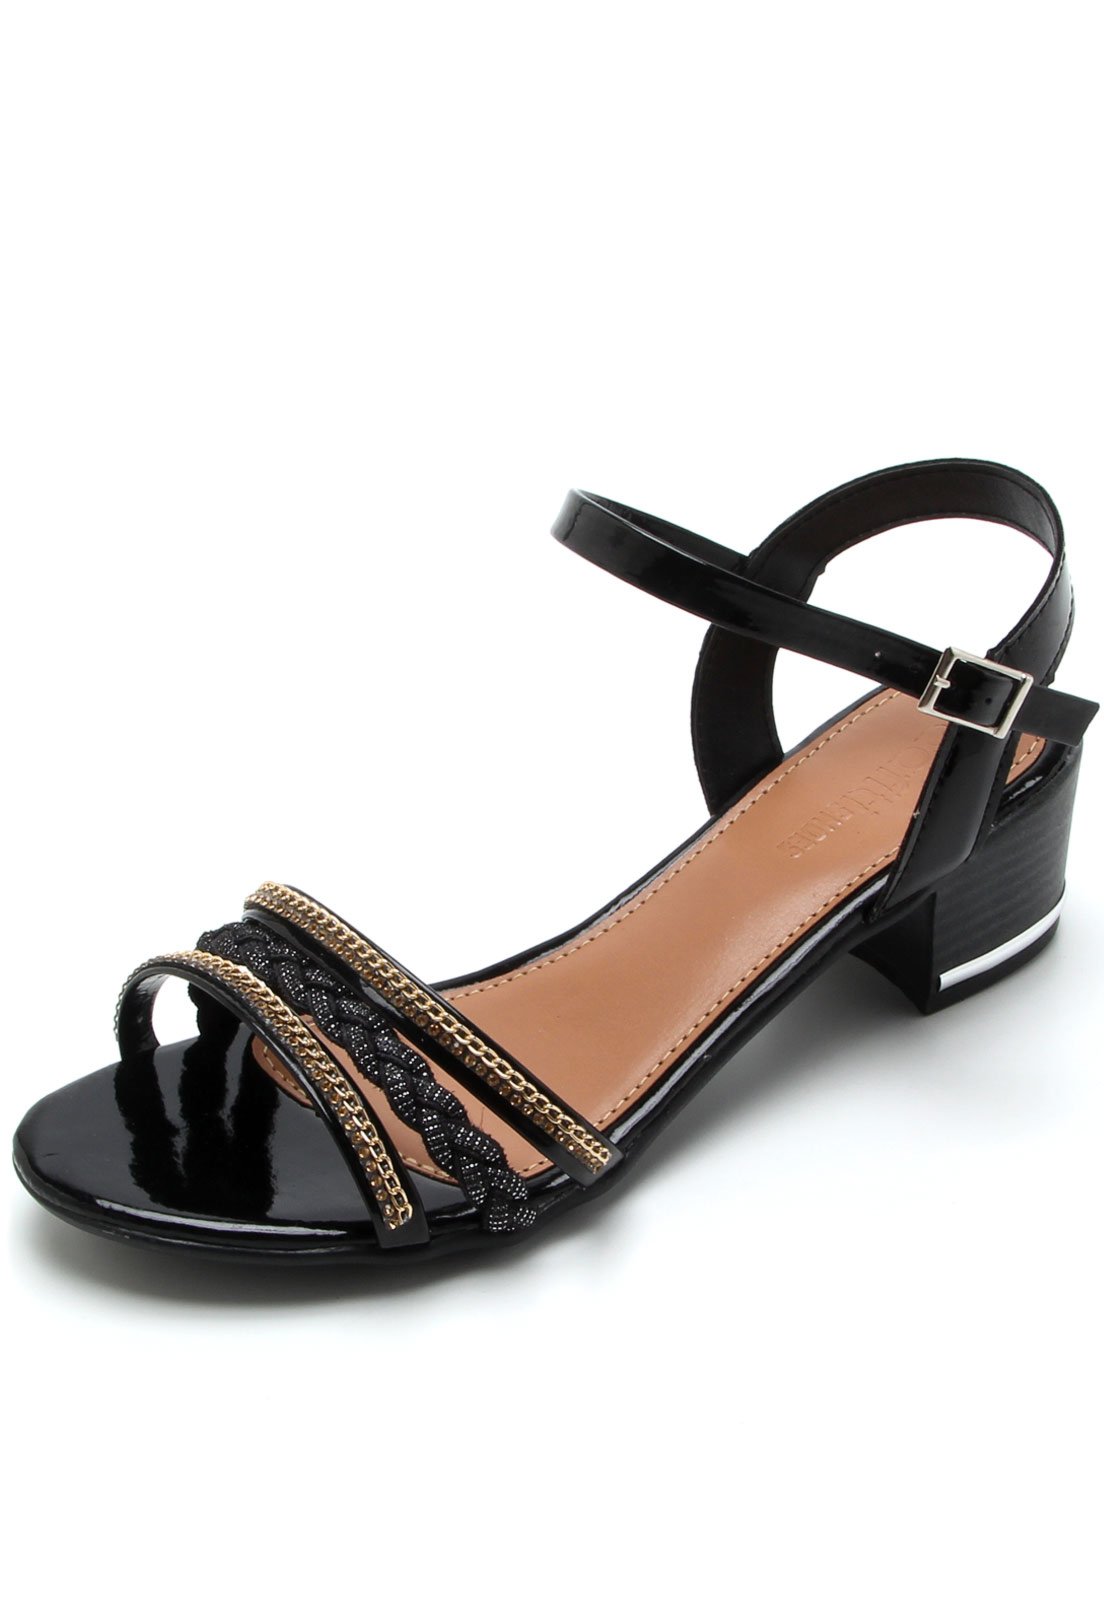 Sandália Dafiti Shoes Tiras Preta - Compre Agora